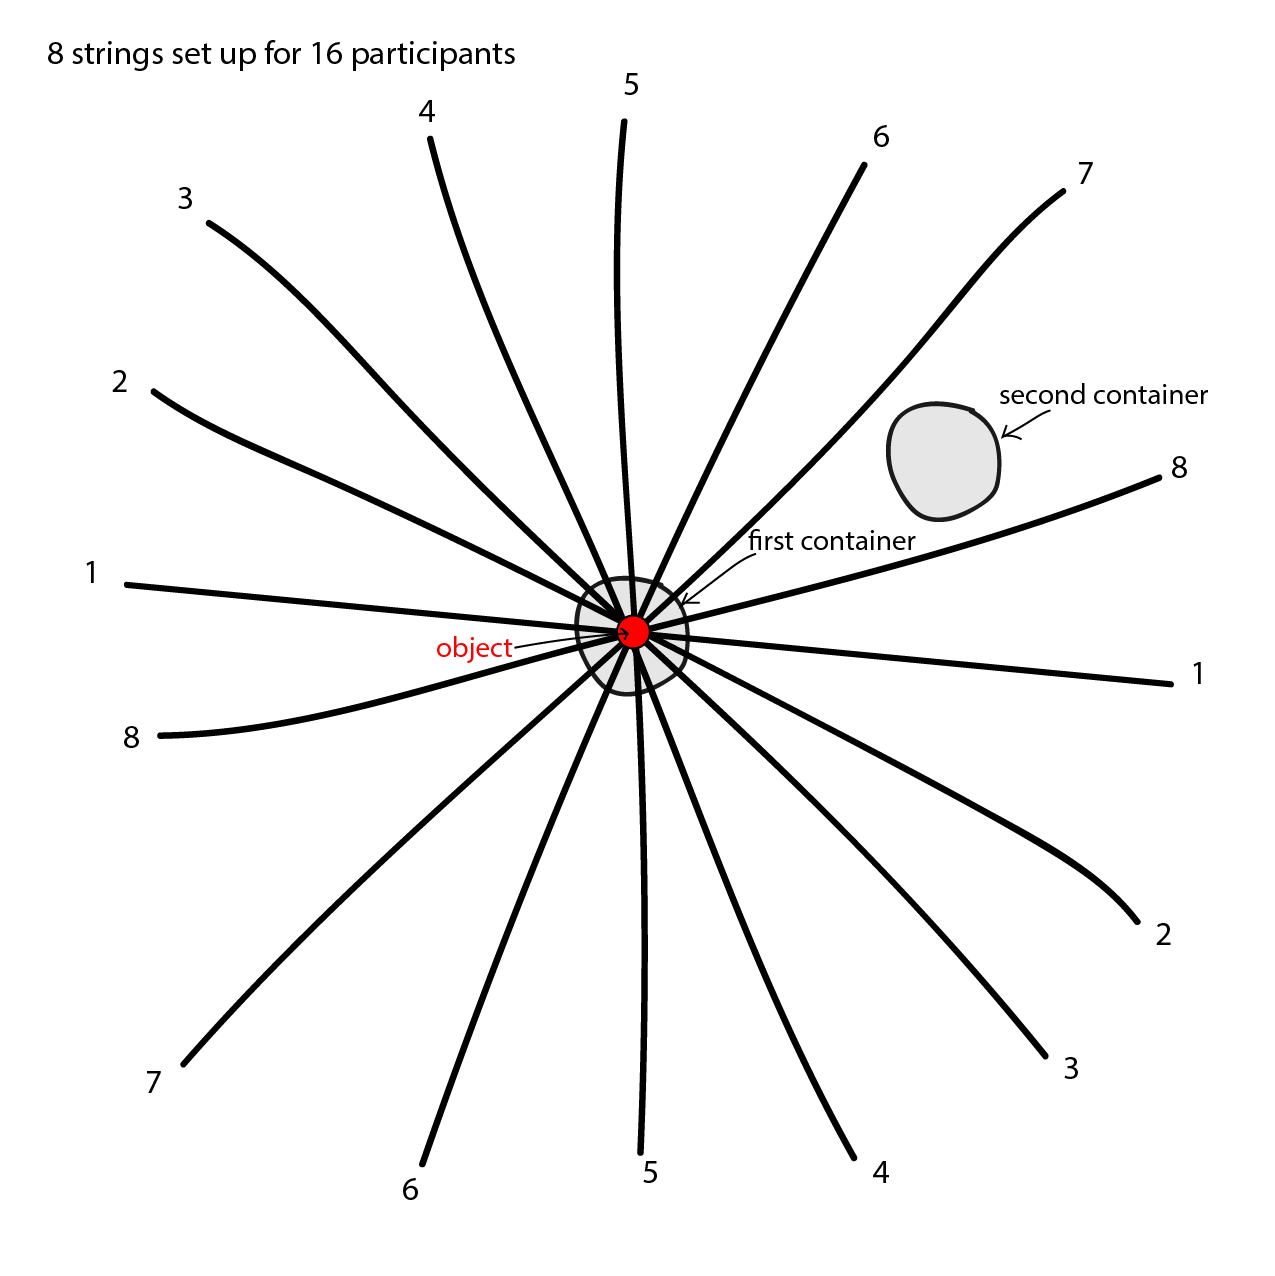 Un schéma représentant 8 lignes également espacées qui se
croisent en leur milieu pour former une sorte de très grande étoile ou astérisque. Les lignes sont numérotées de 1 à 8.
Sous le point d'intersection des lignes on peut voir un cercle nommé « premier récipient» et un peu plus loin un cercle
similaire nommé « deuxième récipient ». Déposé à l'endroit ou les lignes se croisent, on peut voir un cercle plus petit
nommé « objet ».  Le schéma est intitulé « 8 cordes préparées pour 16 participants. »